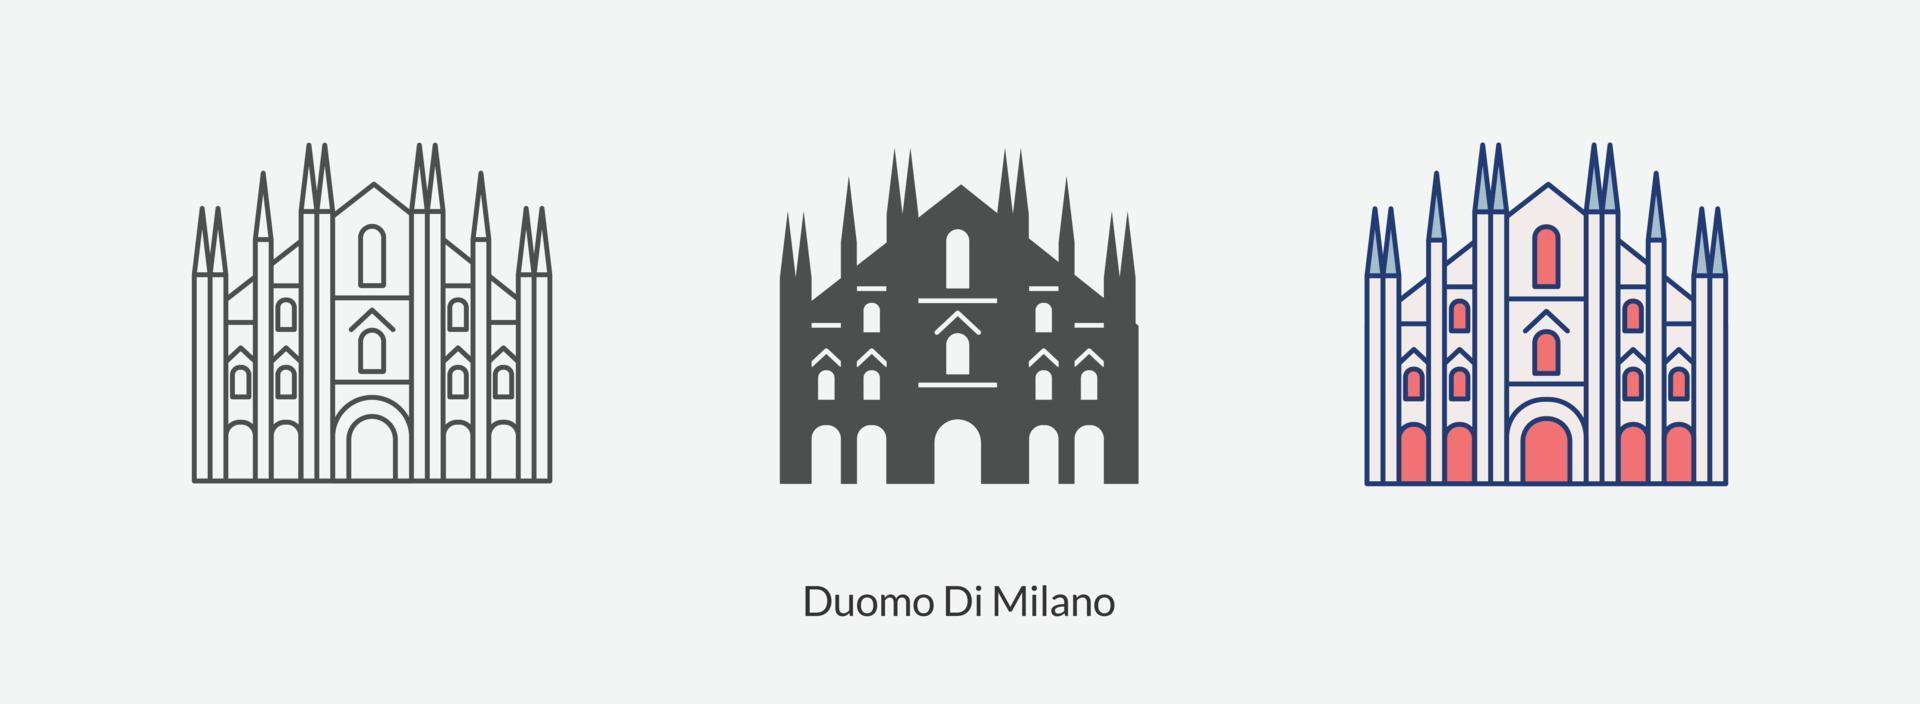 Duomo di Milano icon in different style vector illustration.